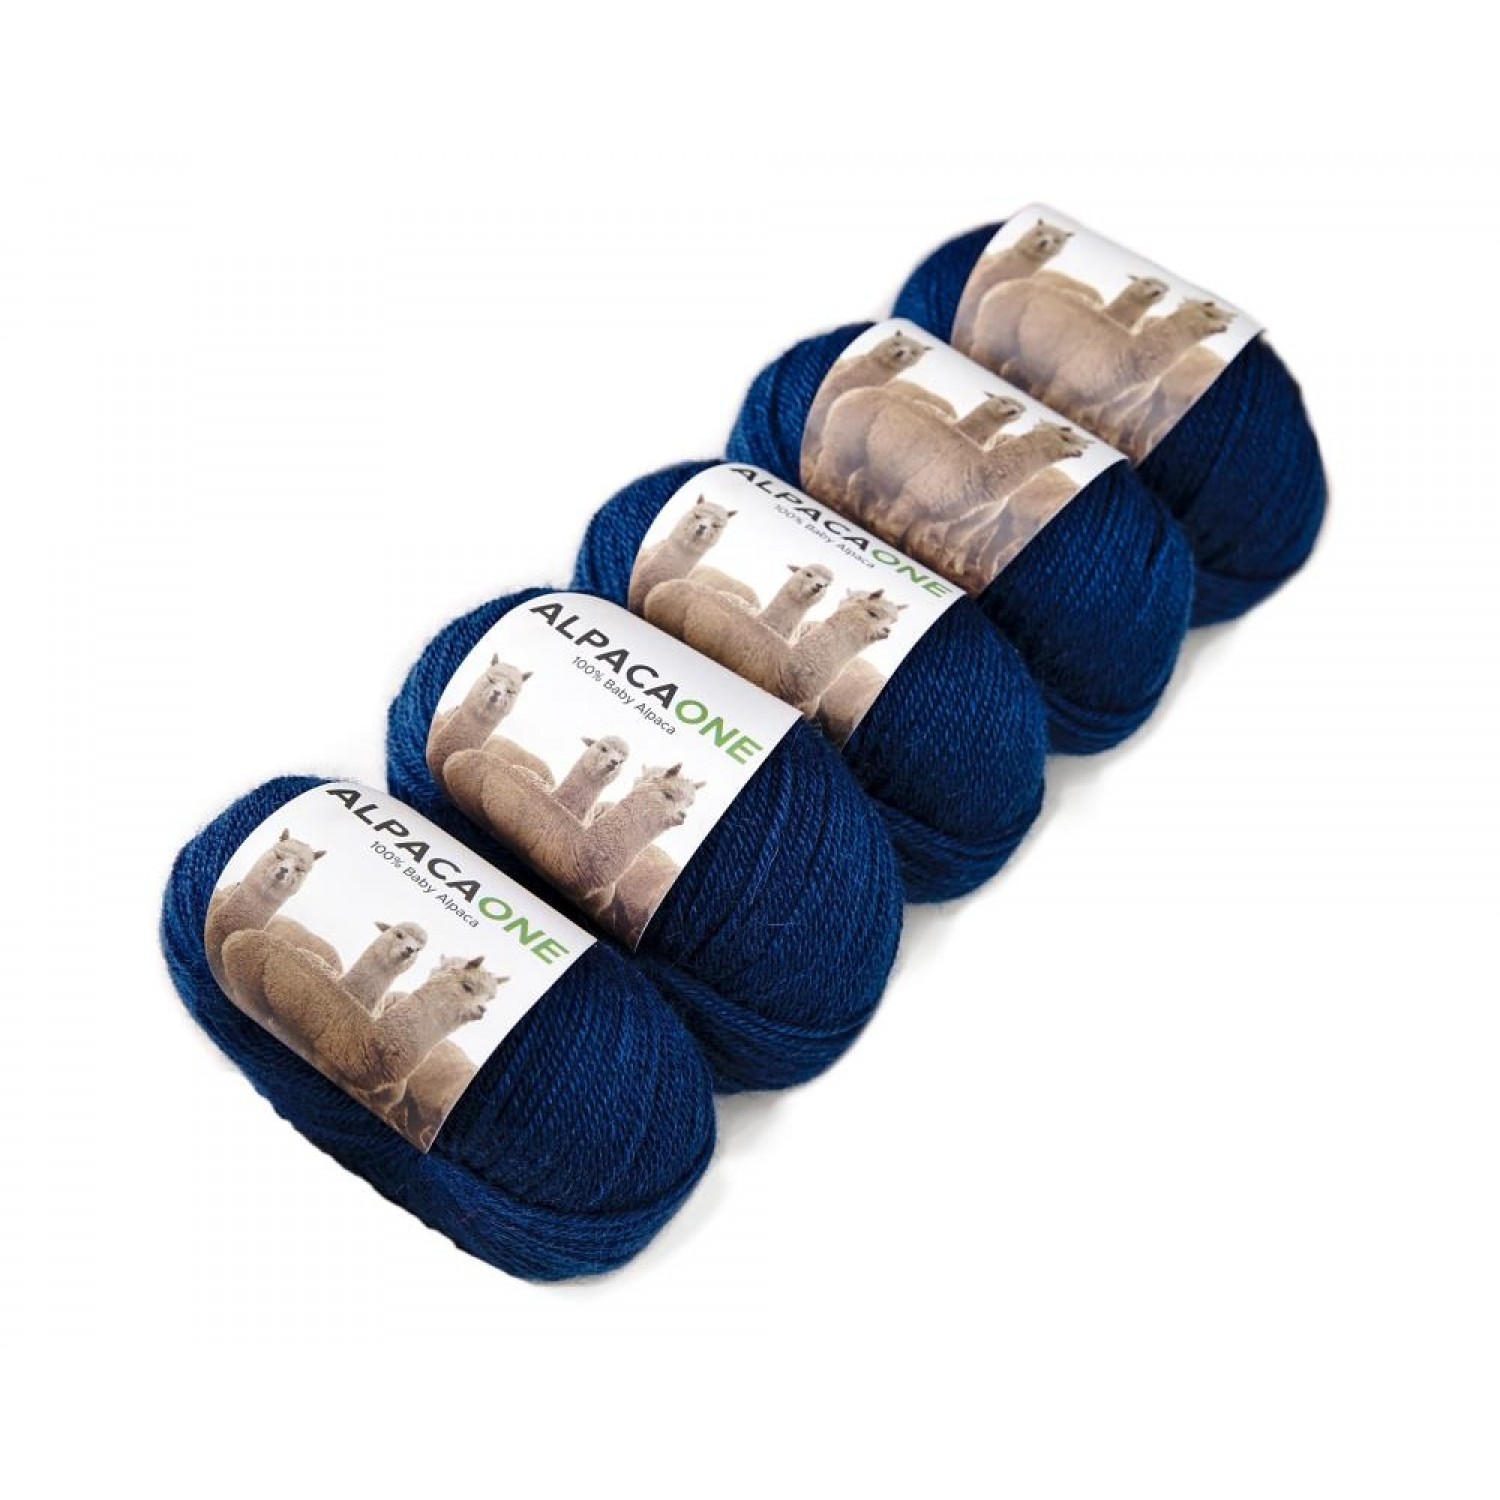 Alpacaone Baby Alpaca wool ball 5 pack petrol blue, OEKO-TEX